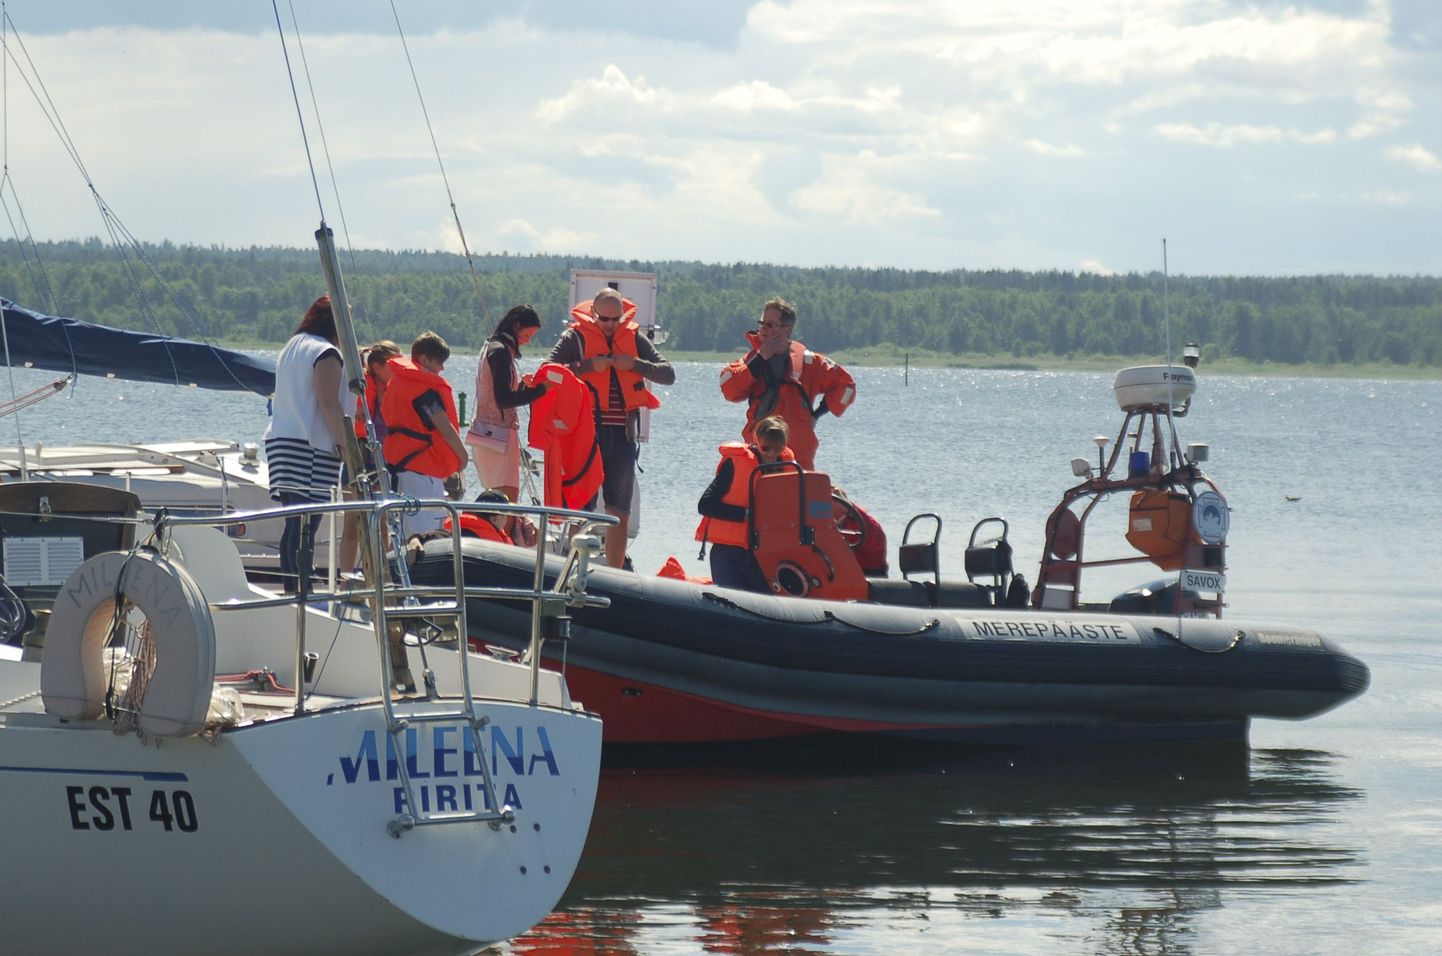 Käsmu vabatahtlikud  merepäästjad riietasid sõidule soovijad päästevestidesse ja viisid merele.